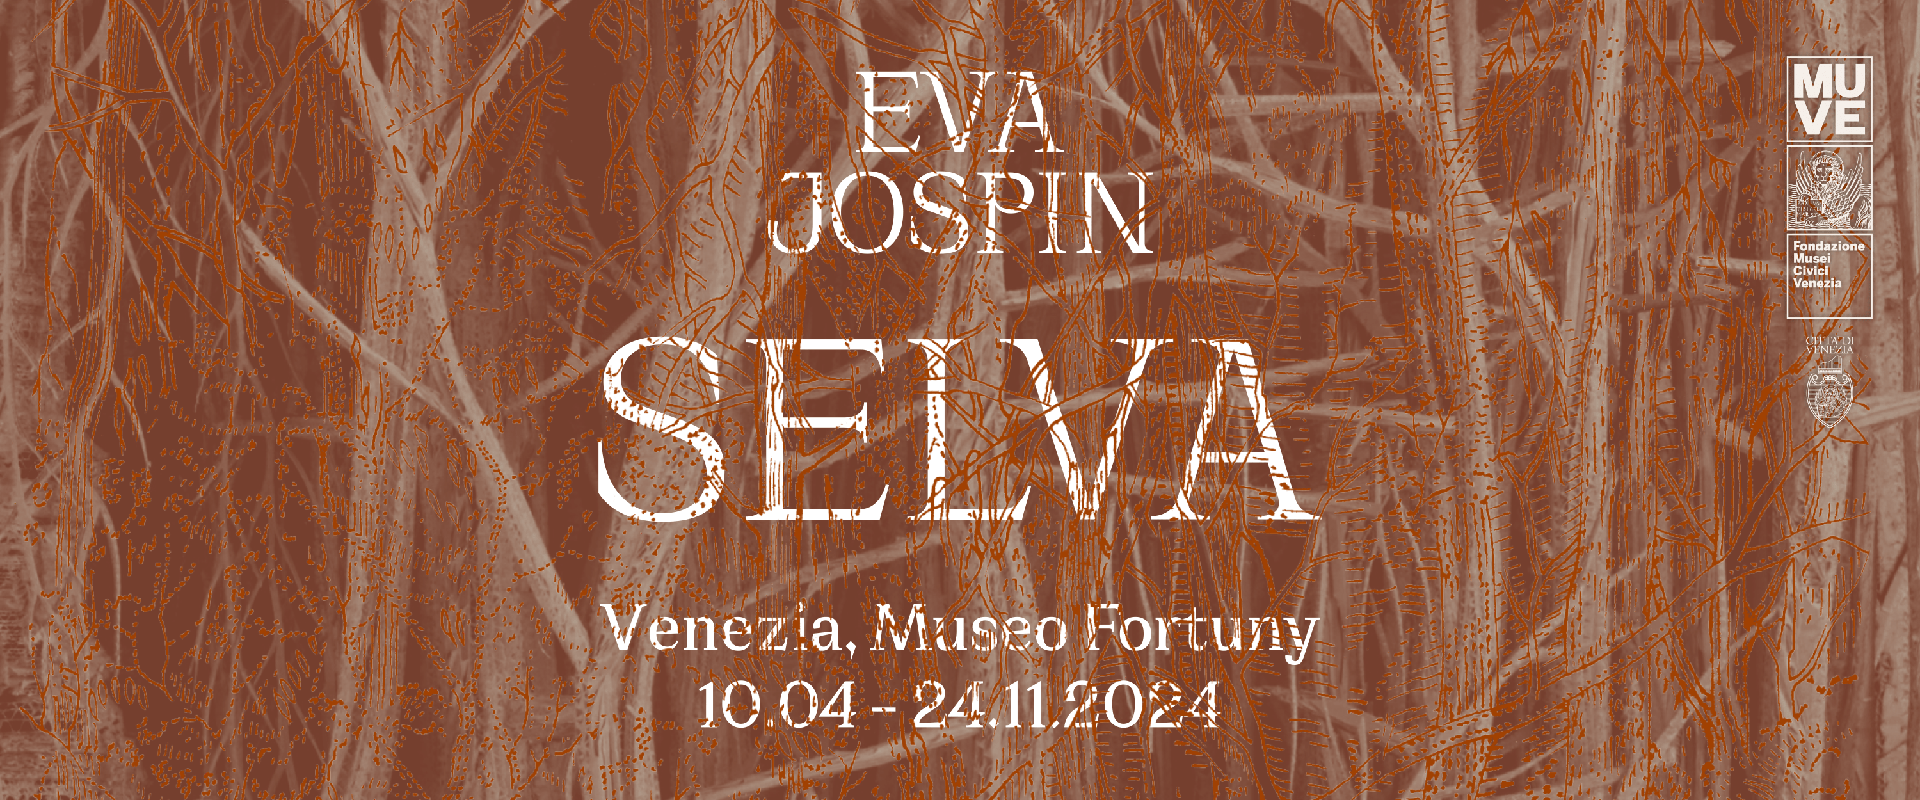  Eva Jospin. Selva